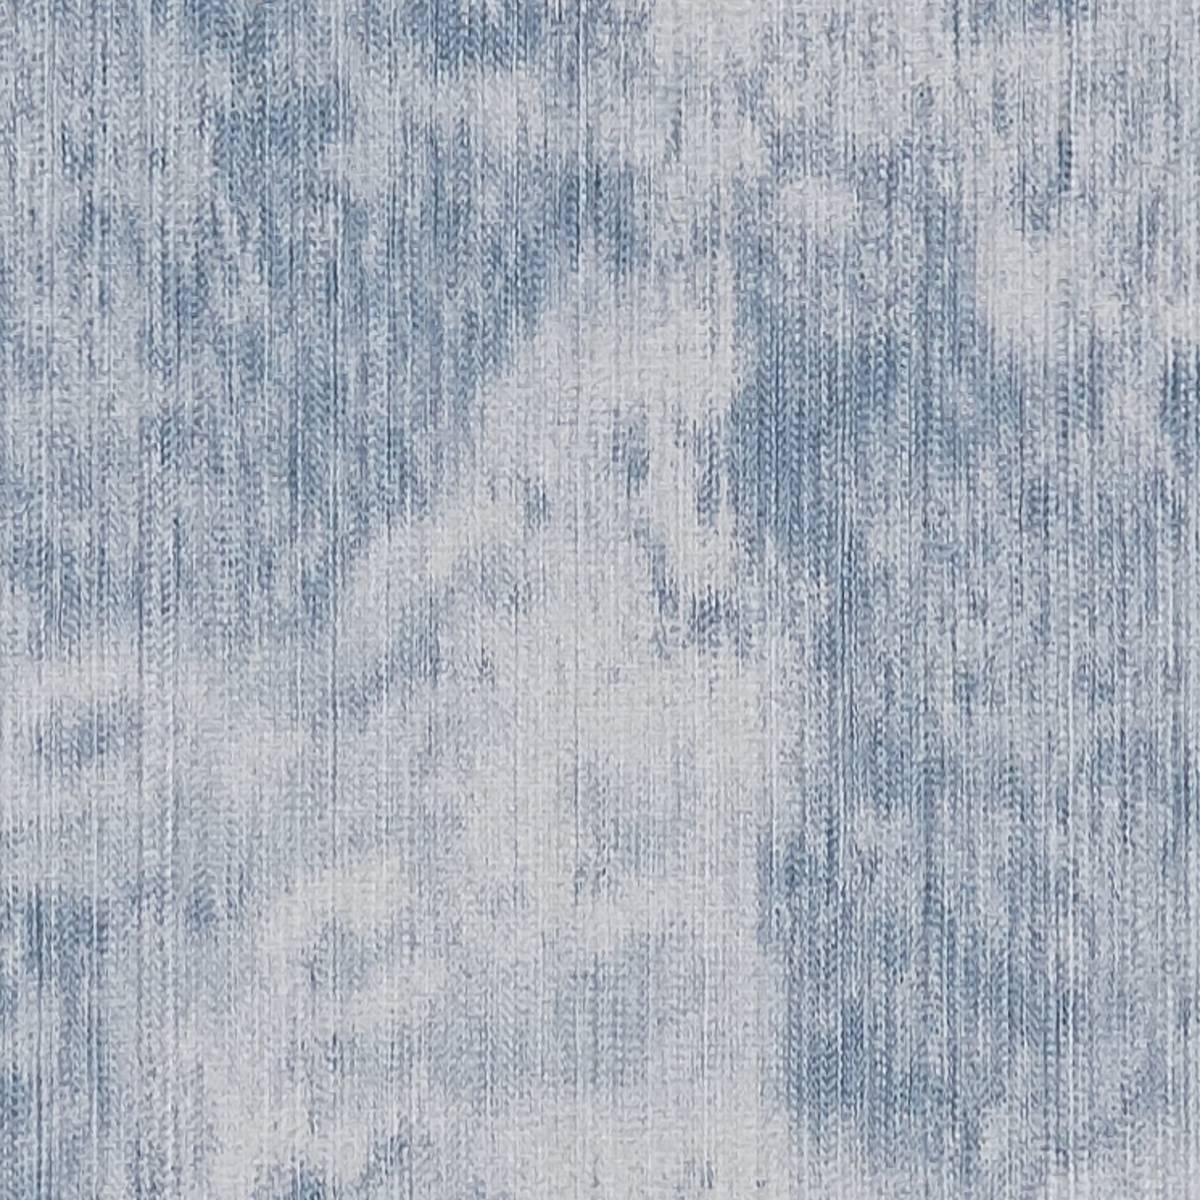 Haze Denim Fabric by Clarke & Clarke